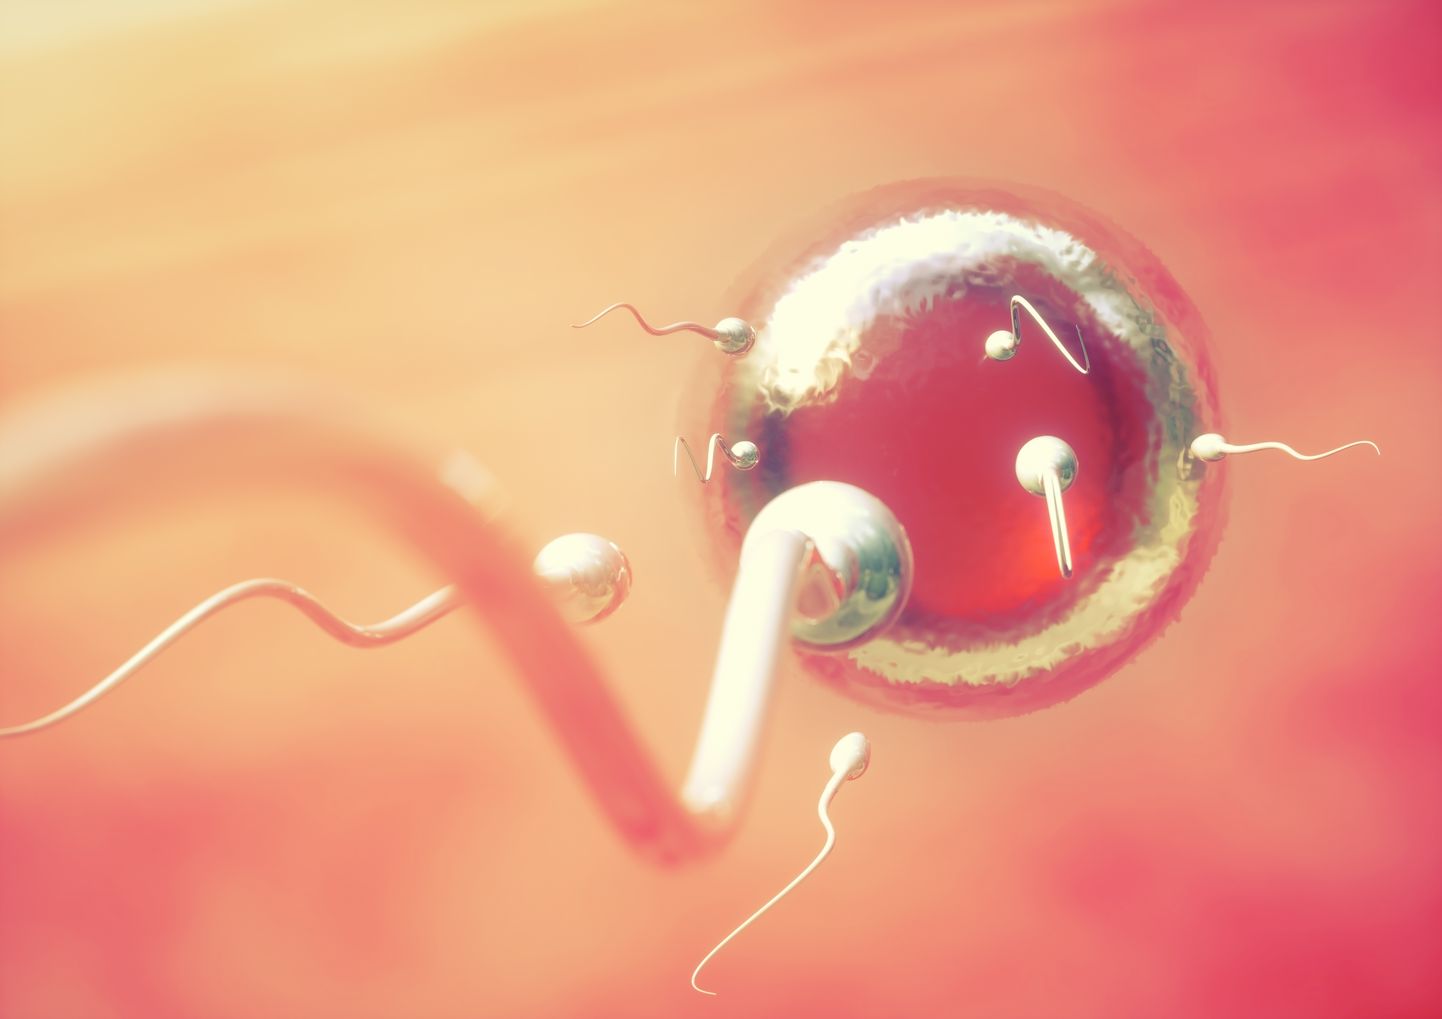 Rohkem kui kolm nurisünnitust üle elanud naiste kaaslaste sperma oli kaks korda rohkem kahjustunud.